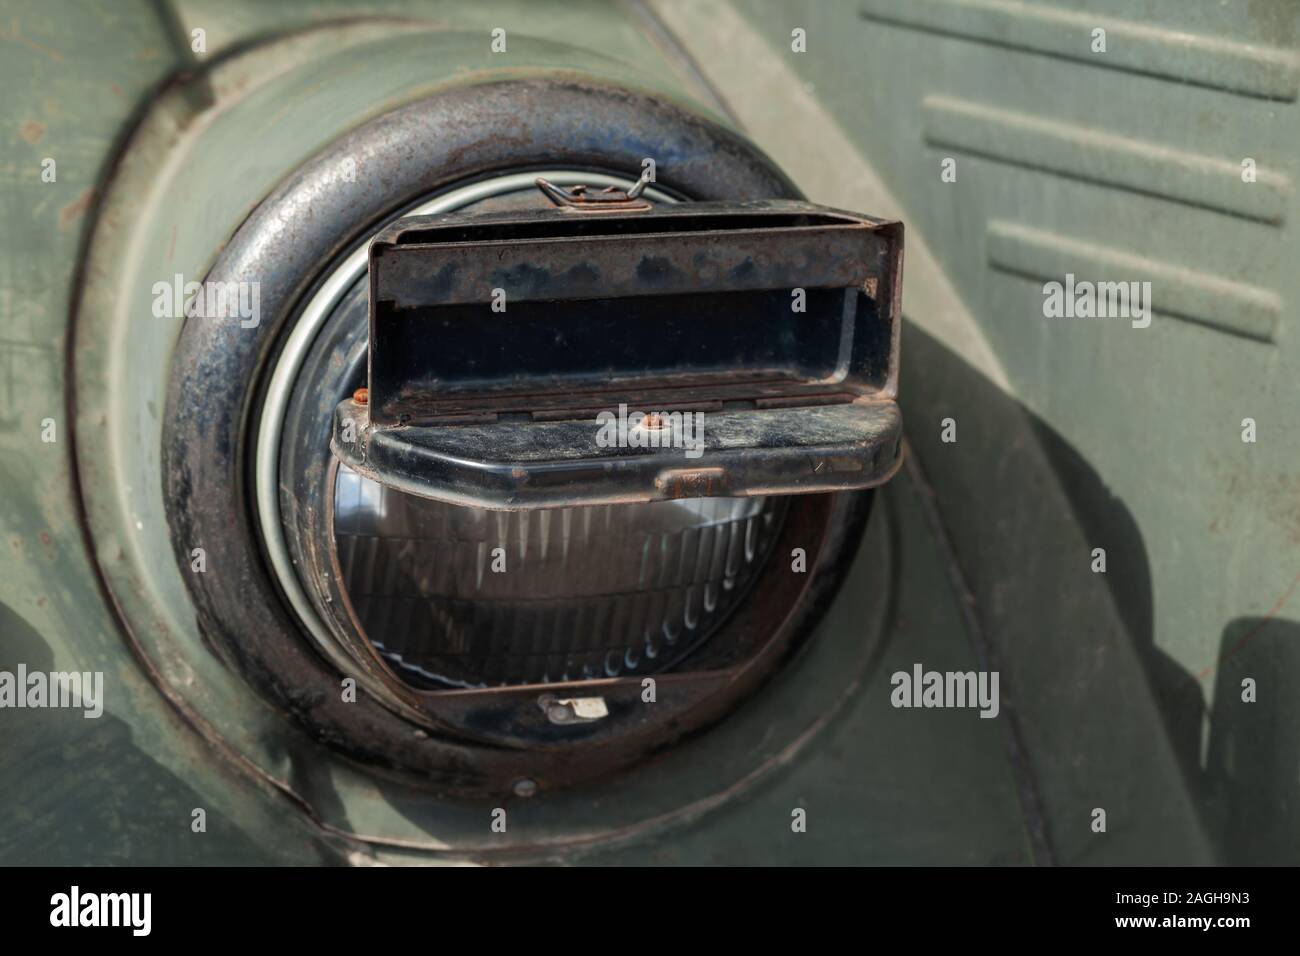 Runde Scheinwerfer eines militärischen Auto mit blackout Scheinwerfer  Abdeckung auf es Oldtimer Fahrzeug aus dem zweiten Weltkrieg. Schließen  Foto Stockfotografie - Alamy